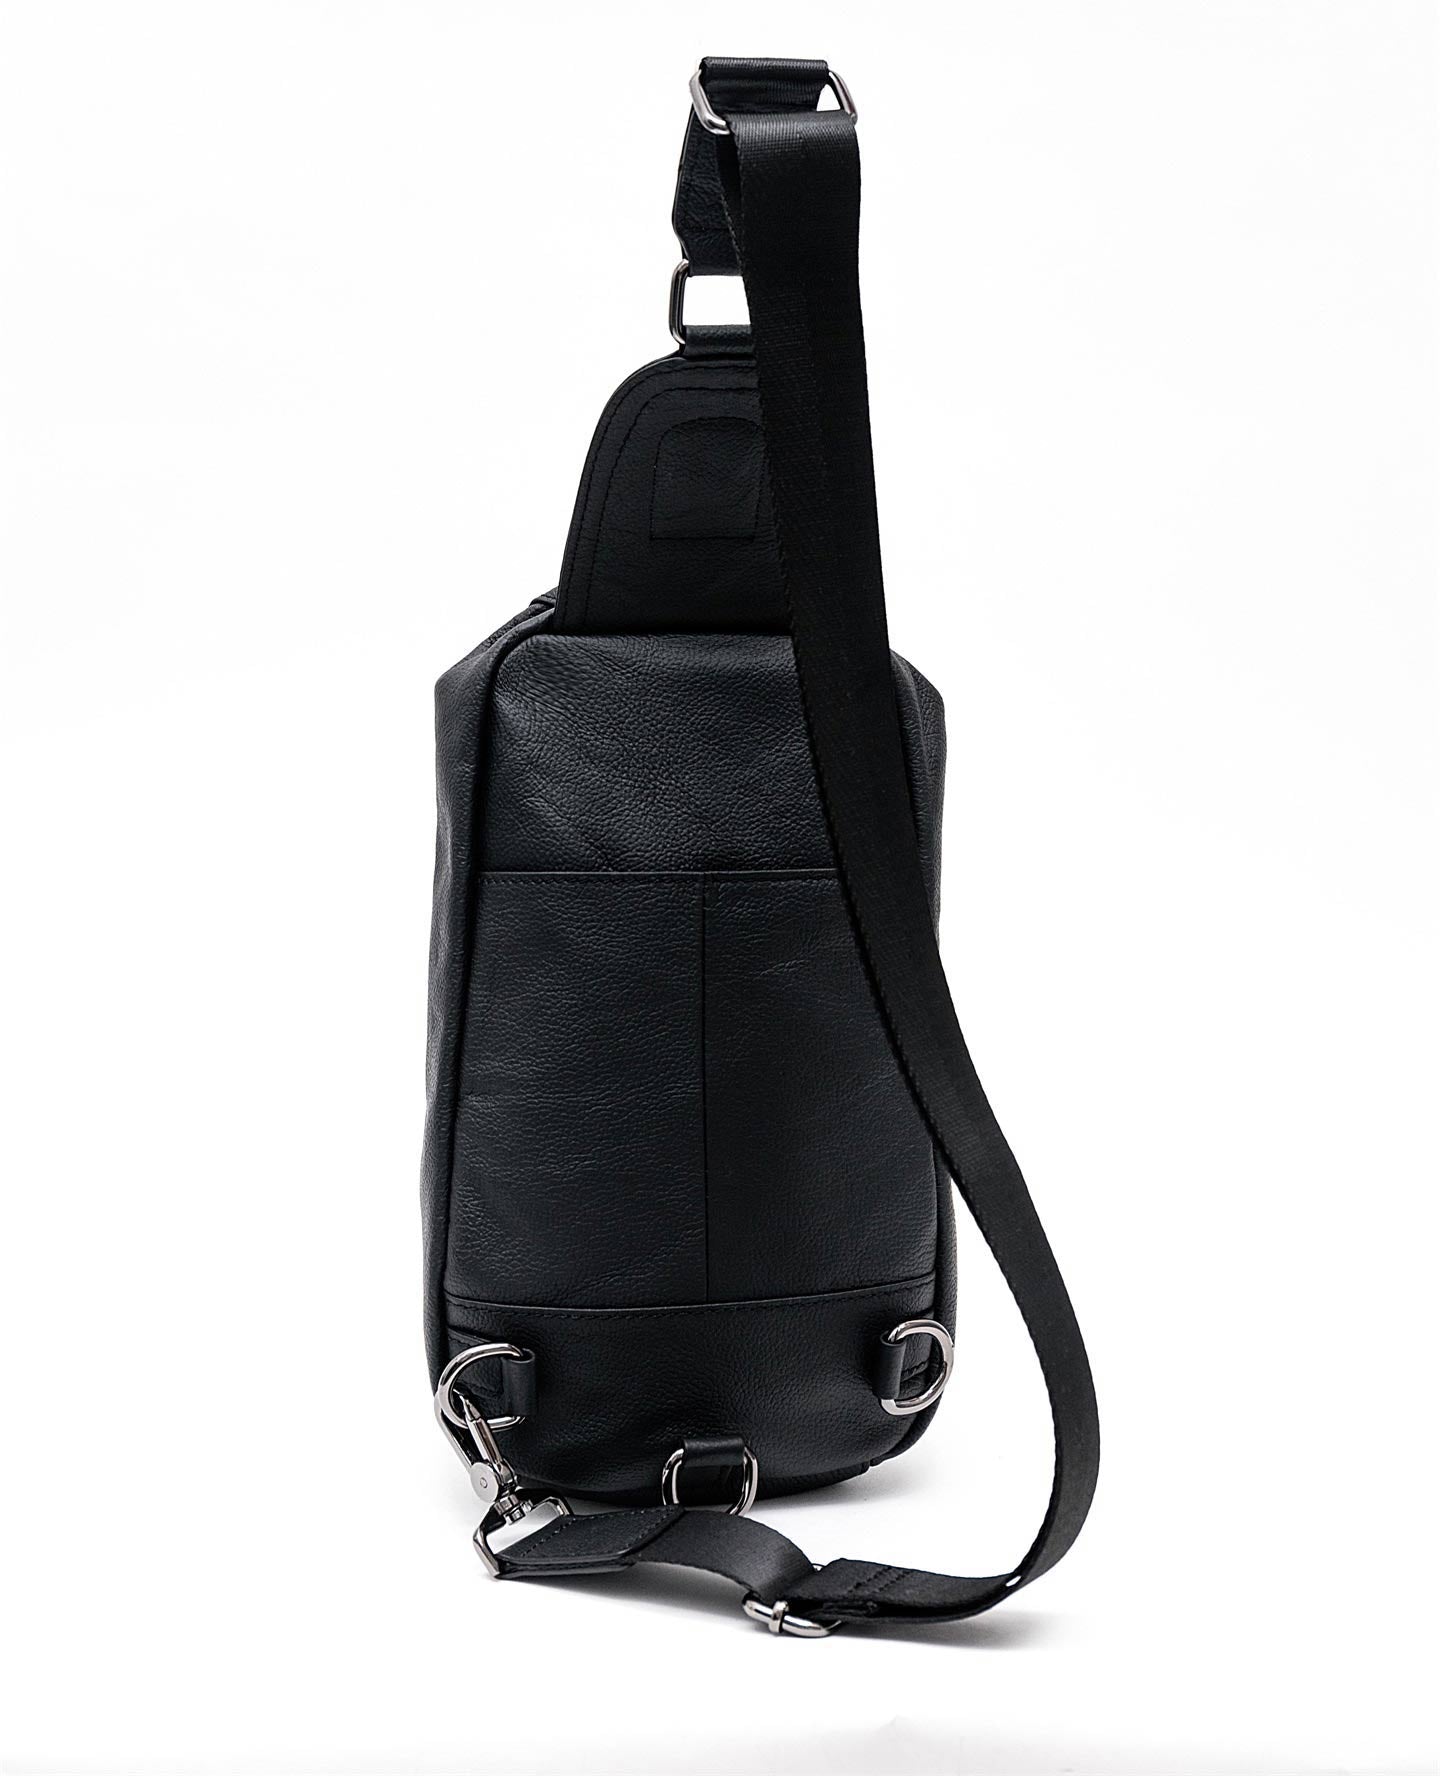 Bullcaptain Leather Chest Sling Bag Genuine Leather Crossbody Small Sachel Bags For Men - 014